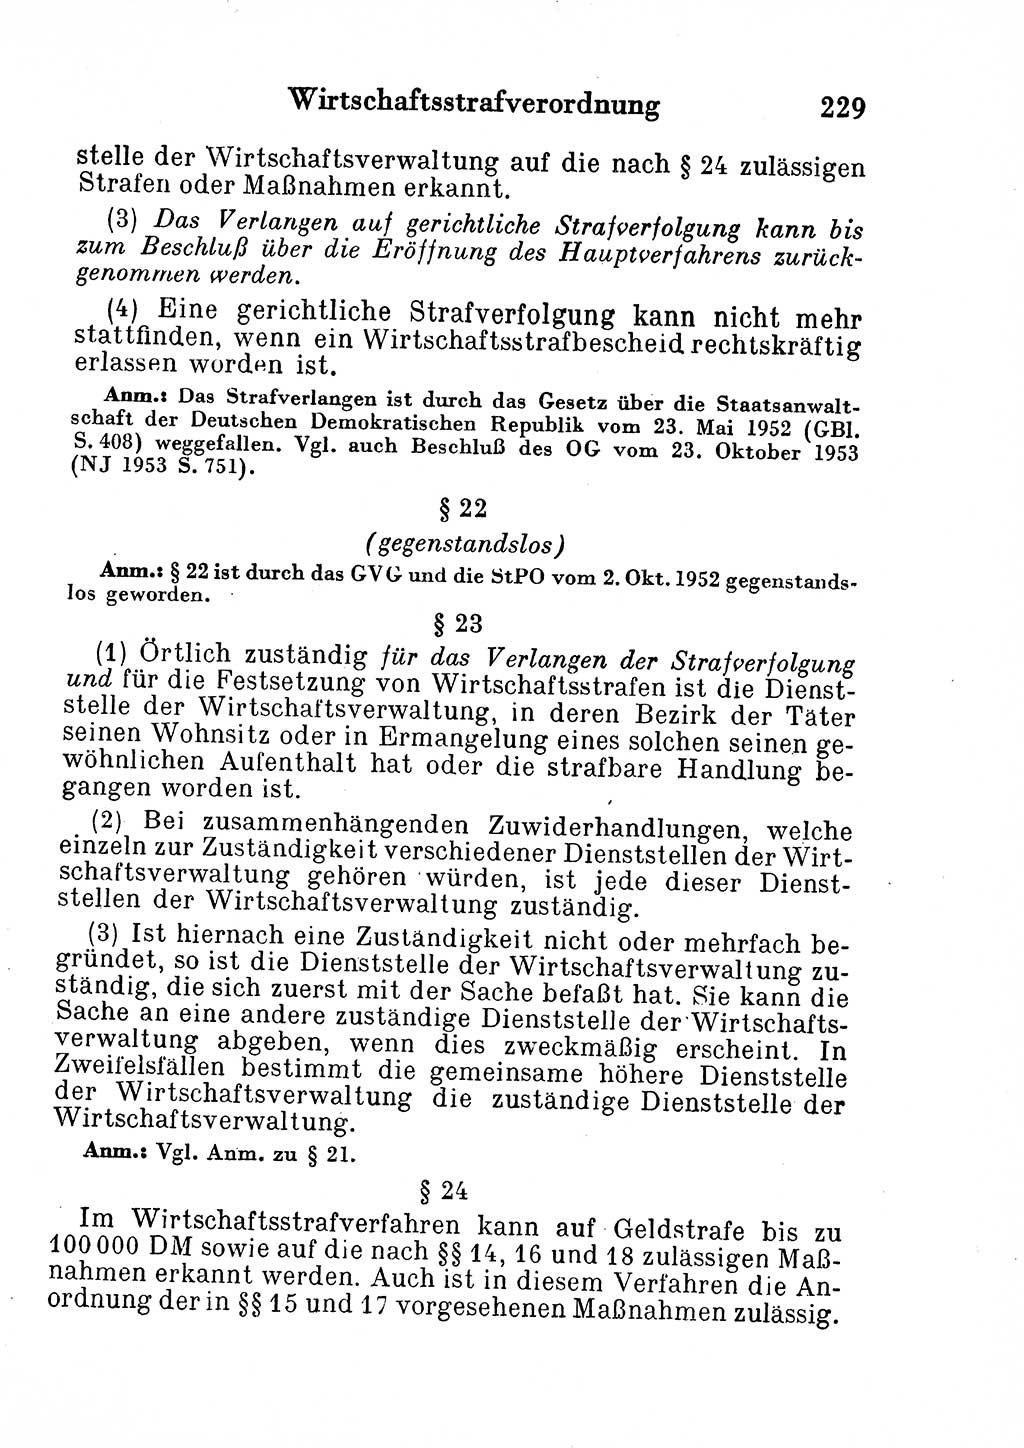 Strafgesetzbuch (StGB) und andere Strafgesetze [Deutsche Demokratische Republik (DDR)] 1954, Seite 229 (StGB Strafges. DDR 1954, S. 229)